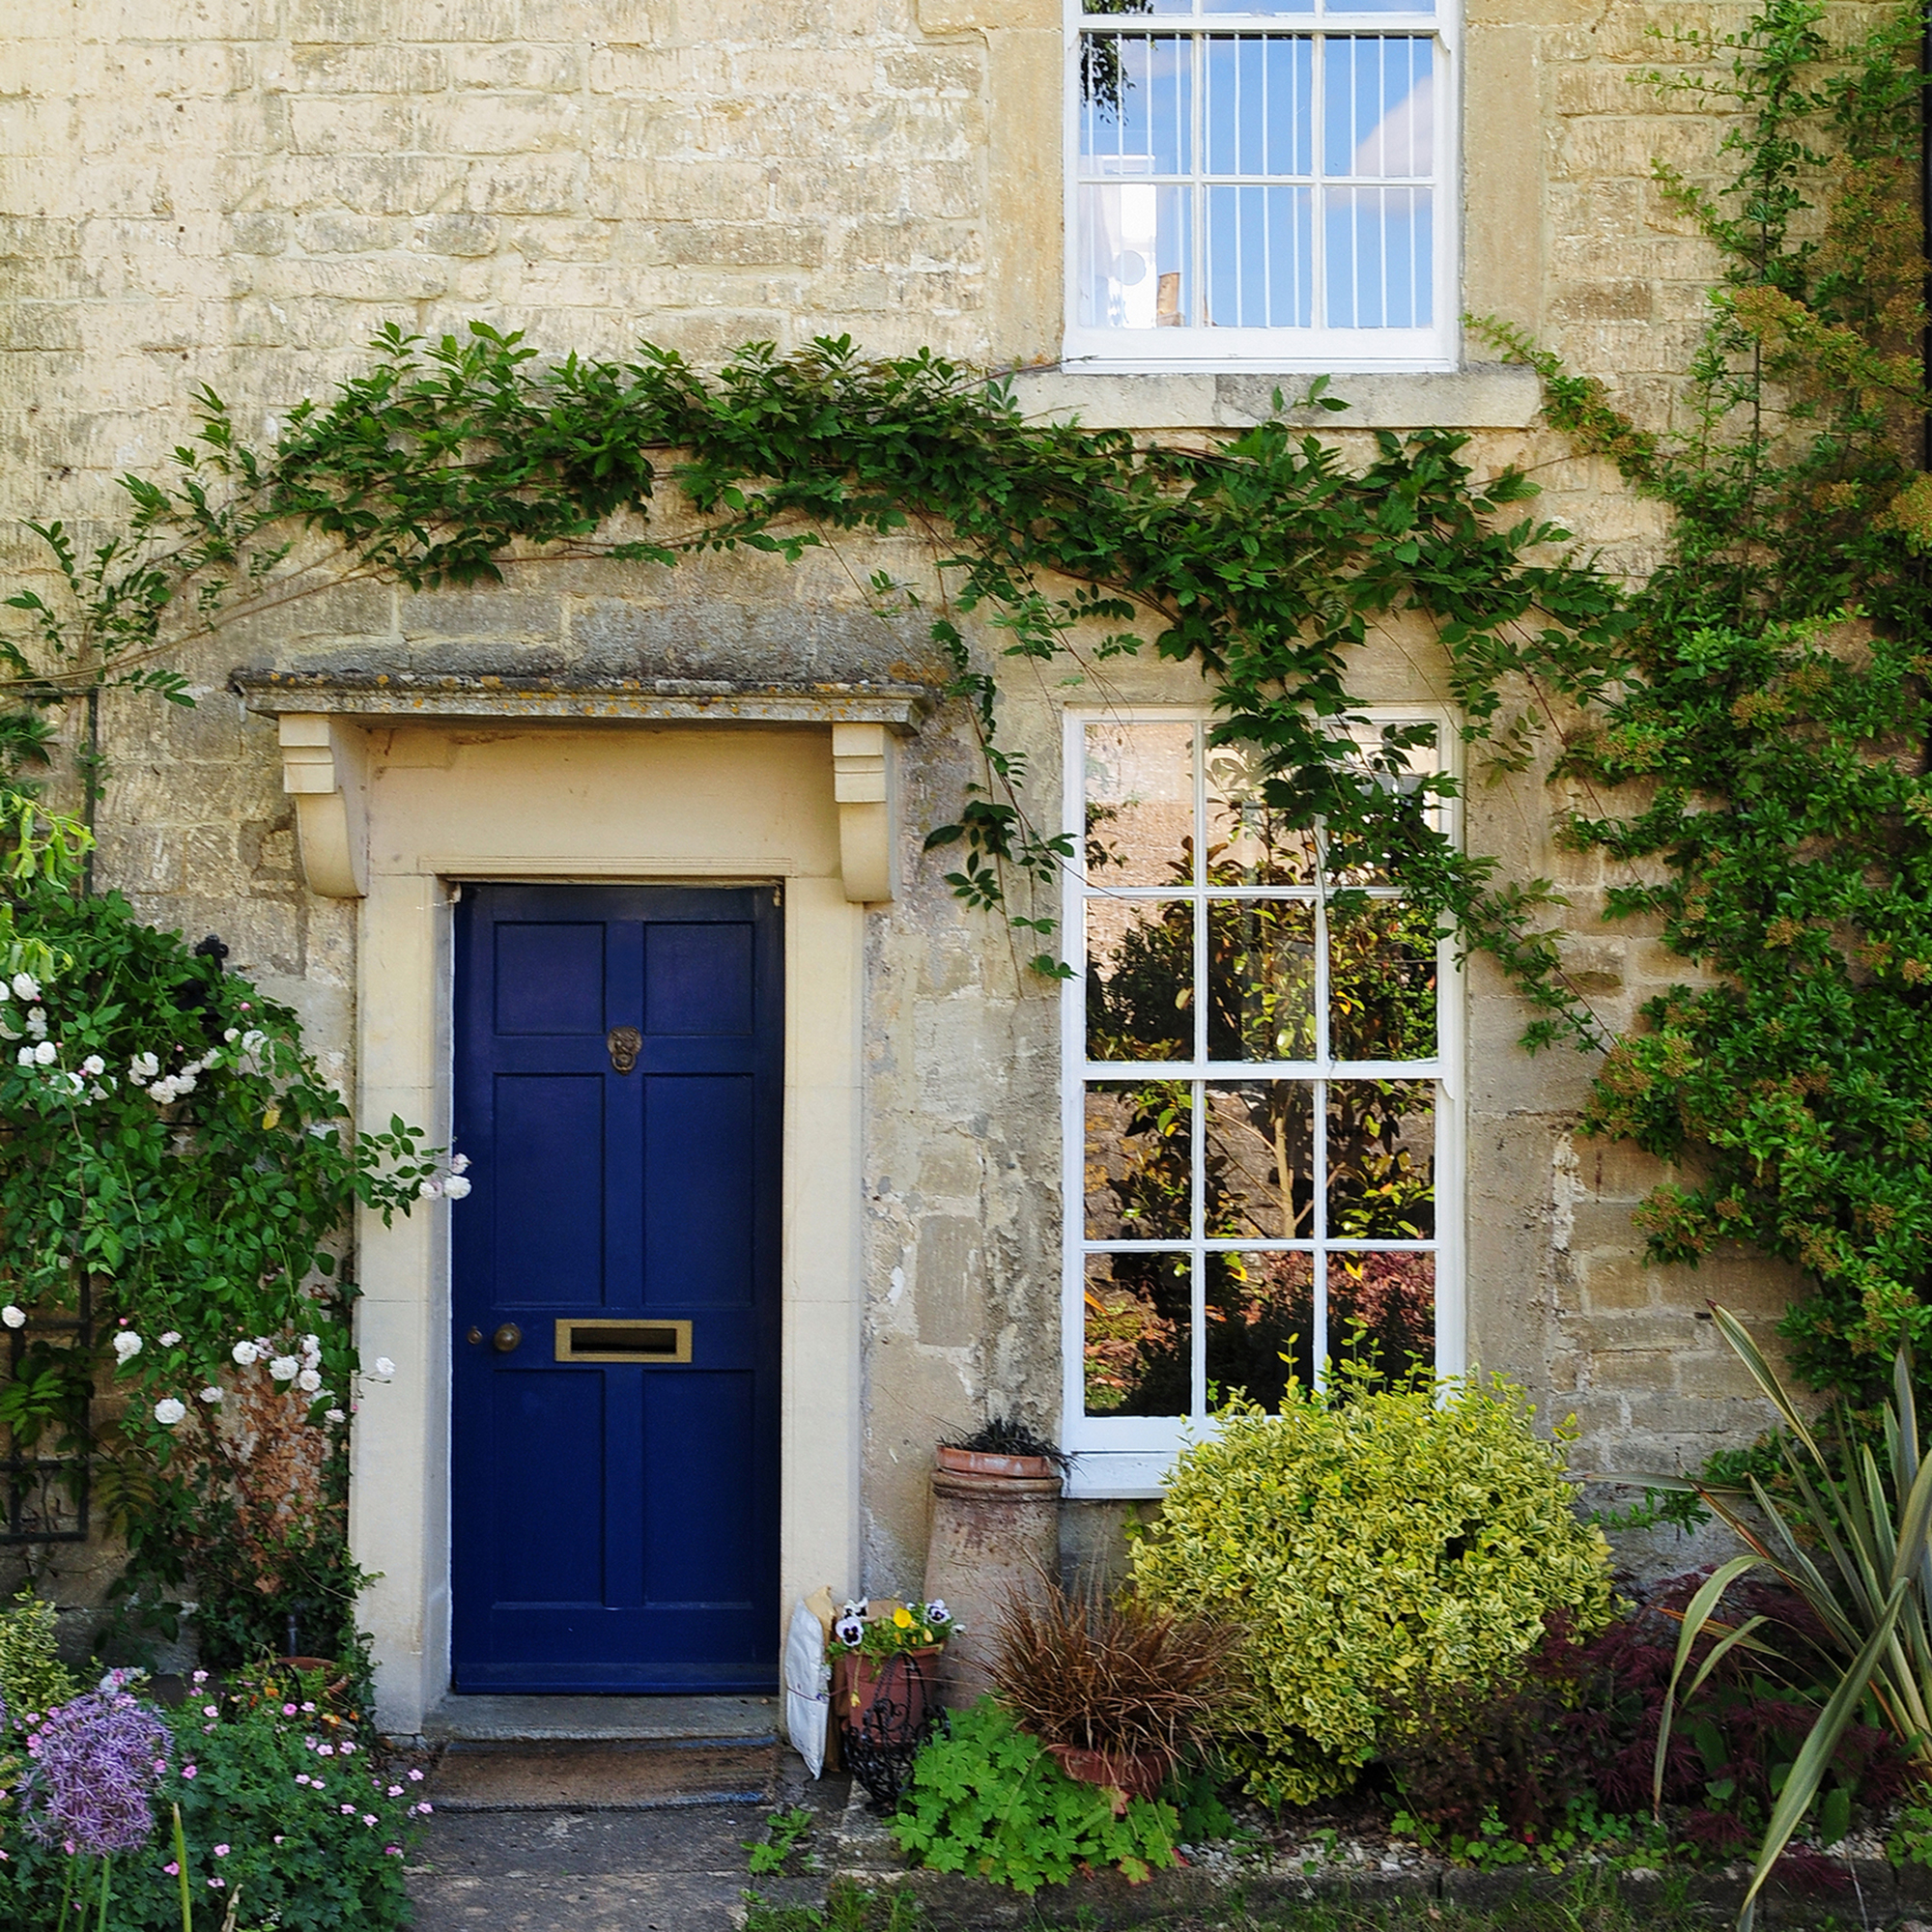 Rumah tertutup Ivy dengan pintu biru